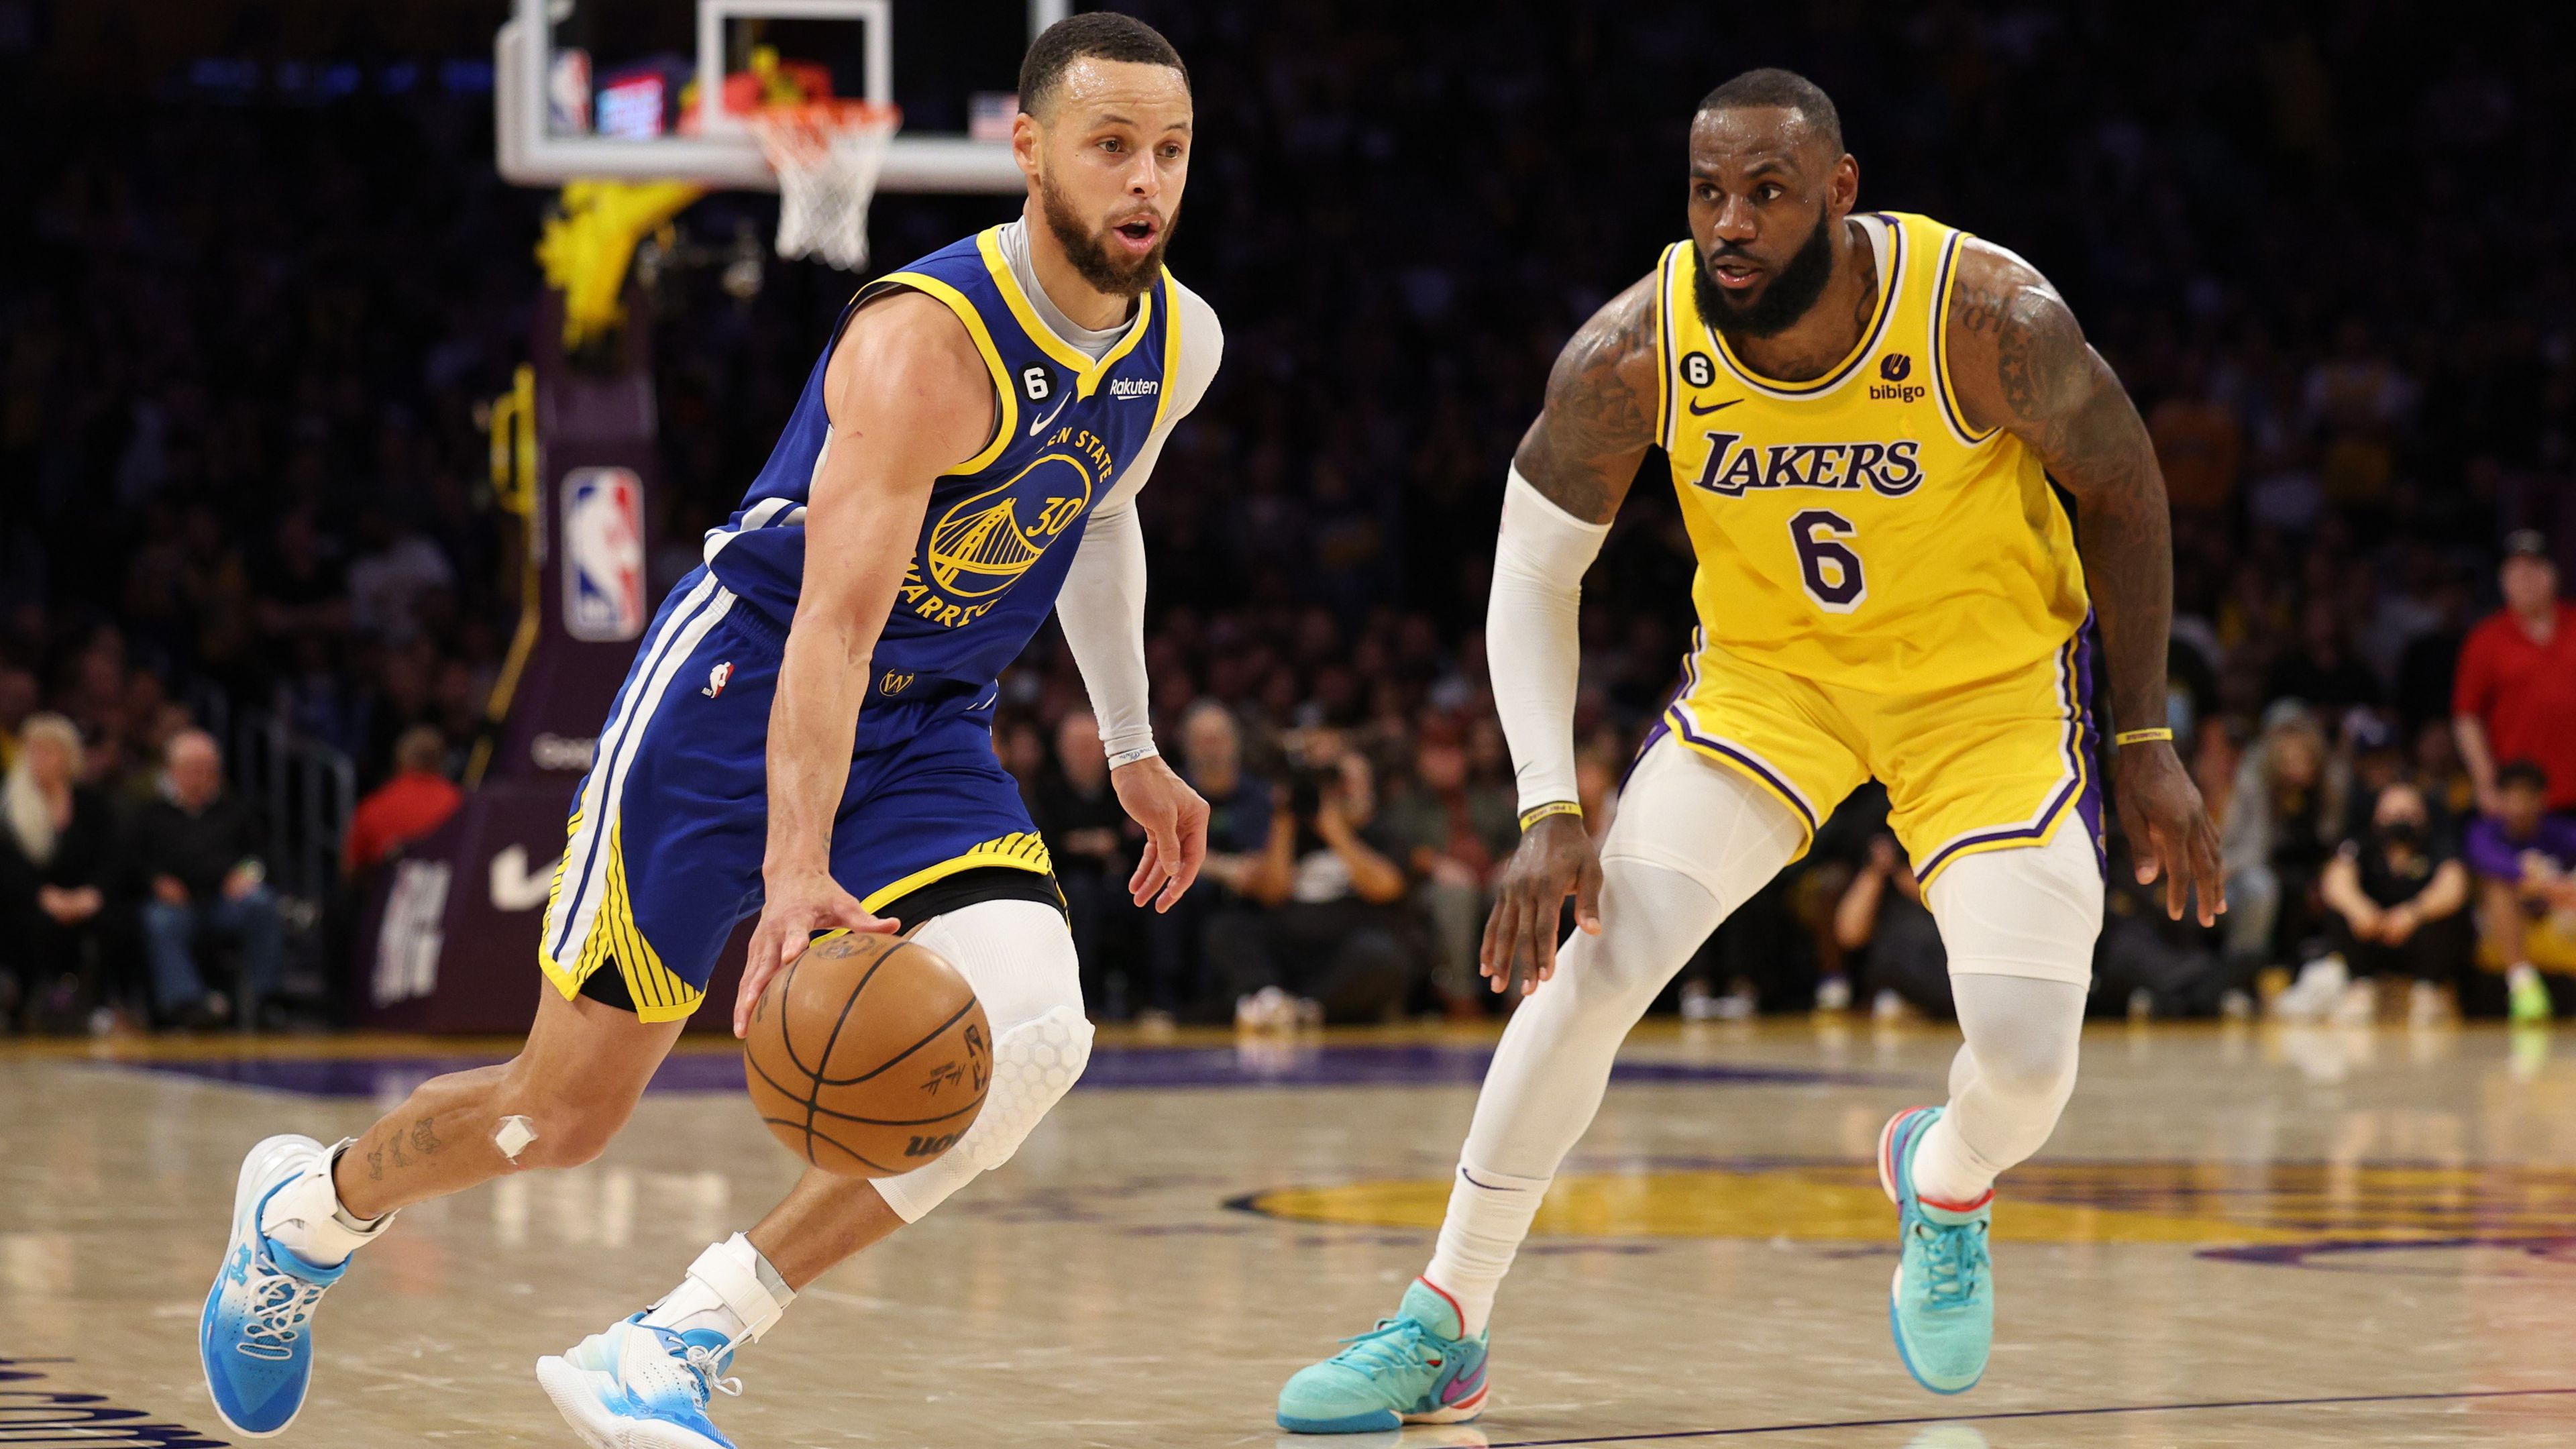 Curry nagyot játszott, de a Golden State megint kikapott a Lakerstől